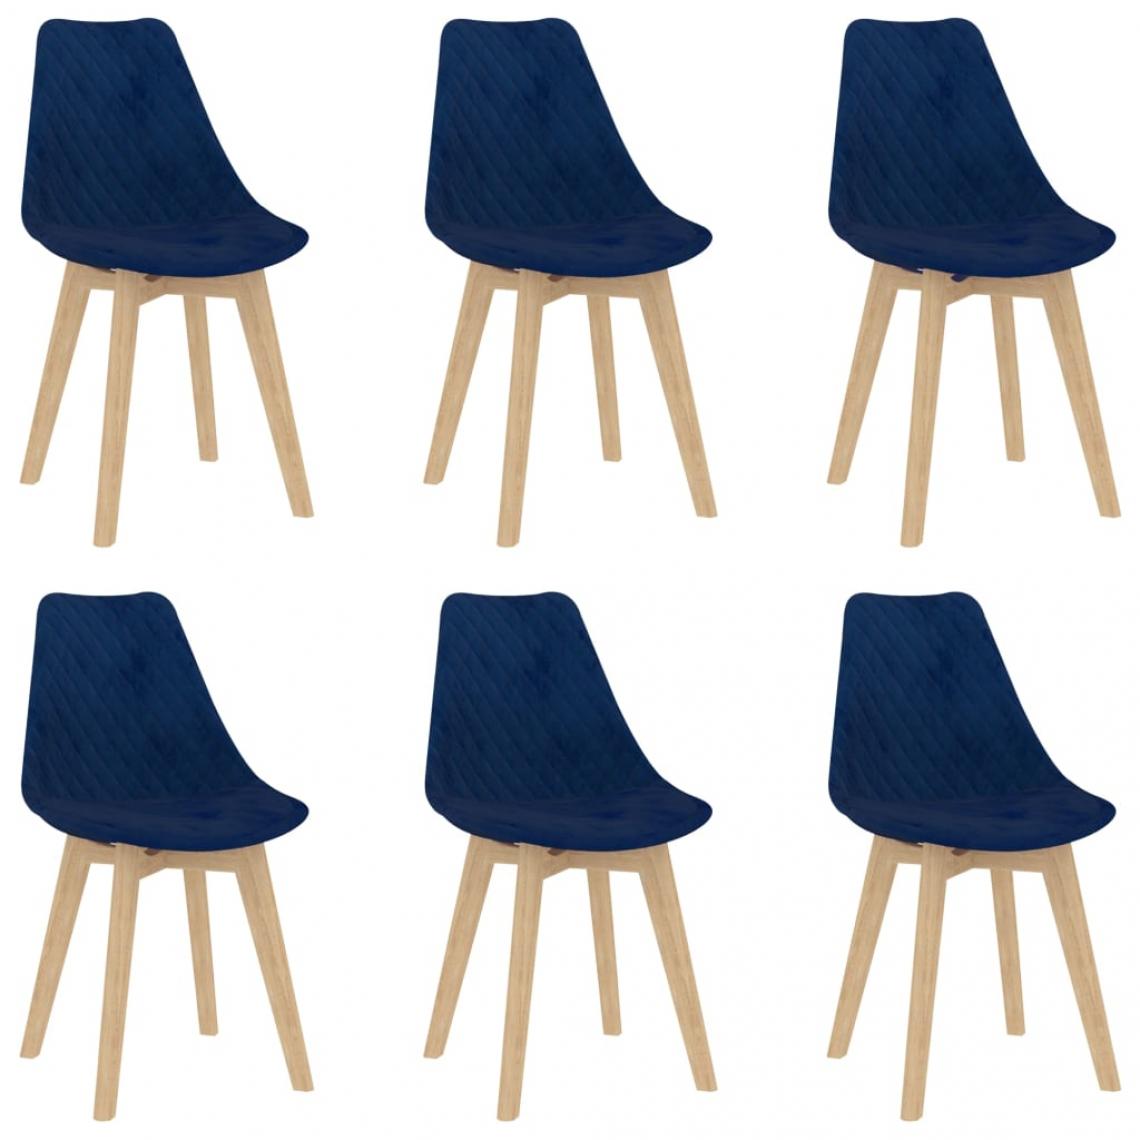 Decoshop26 - Lot de 6 chaises de salle à manger cuisine design moderne velours bleu CDS022226 - Chaises